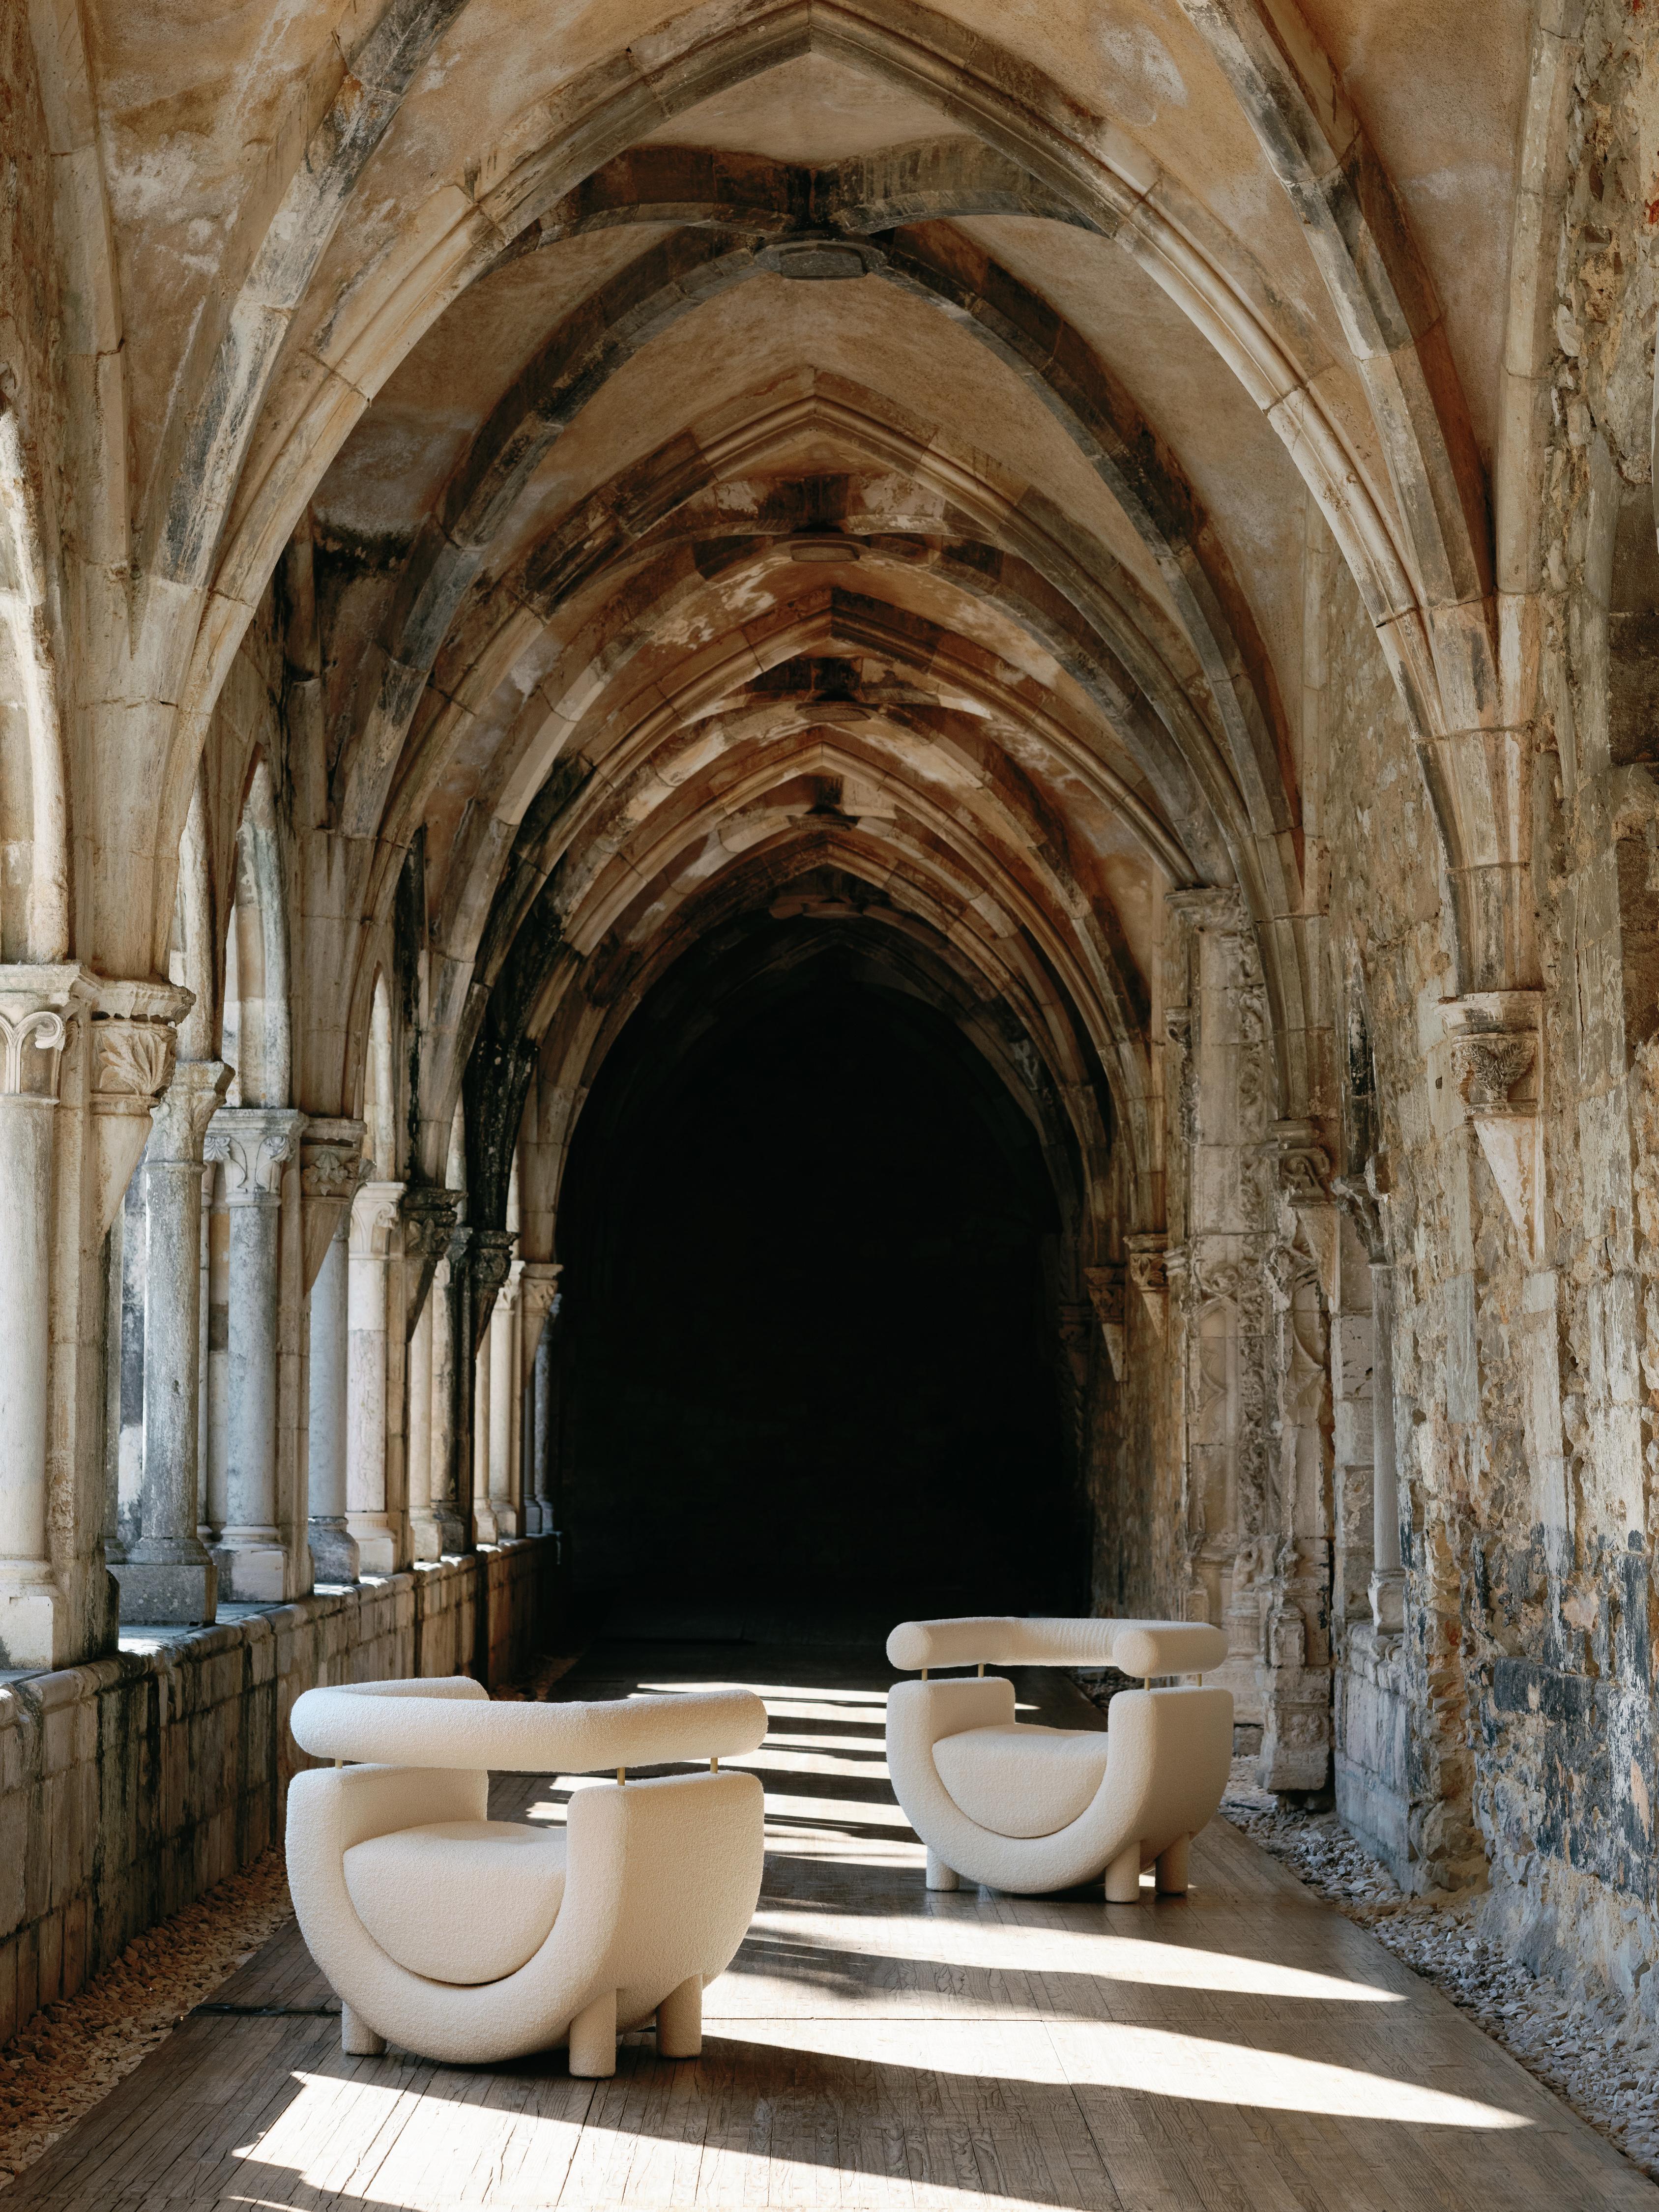 Sessel Mel, Collection'S Contemporary, handgefertigt in Portugal - Europa von Greenapple.

Der von Rute Martins für die Collection'S Contemporary entworfene Sessel Mel, der nach dem reinsten und süßesten Geschenk der Natur benannt ist, bringt die